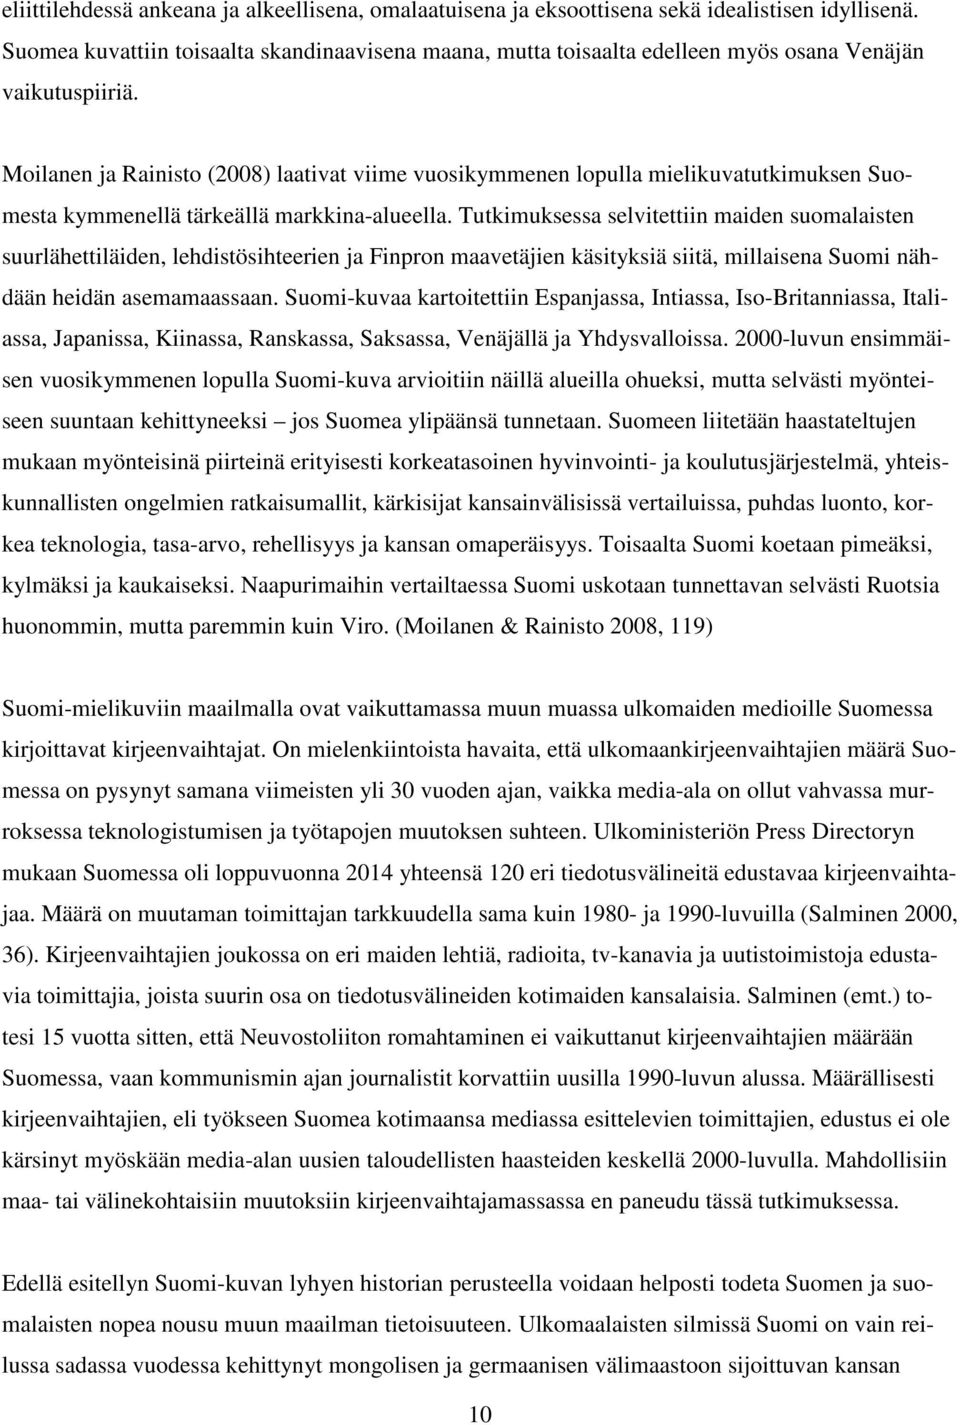 Moilanen ja Rainisto (2008) laativat viime vuosikymmenen lopulla mielikuvatutkimuksen Suomesta kymmenellä tärkeällä markkina-alueella.